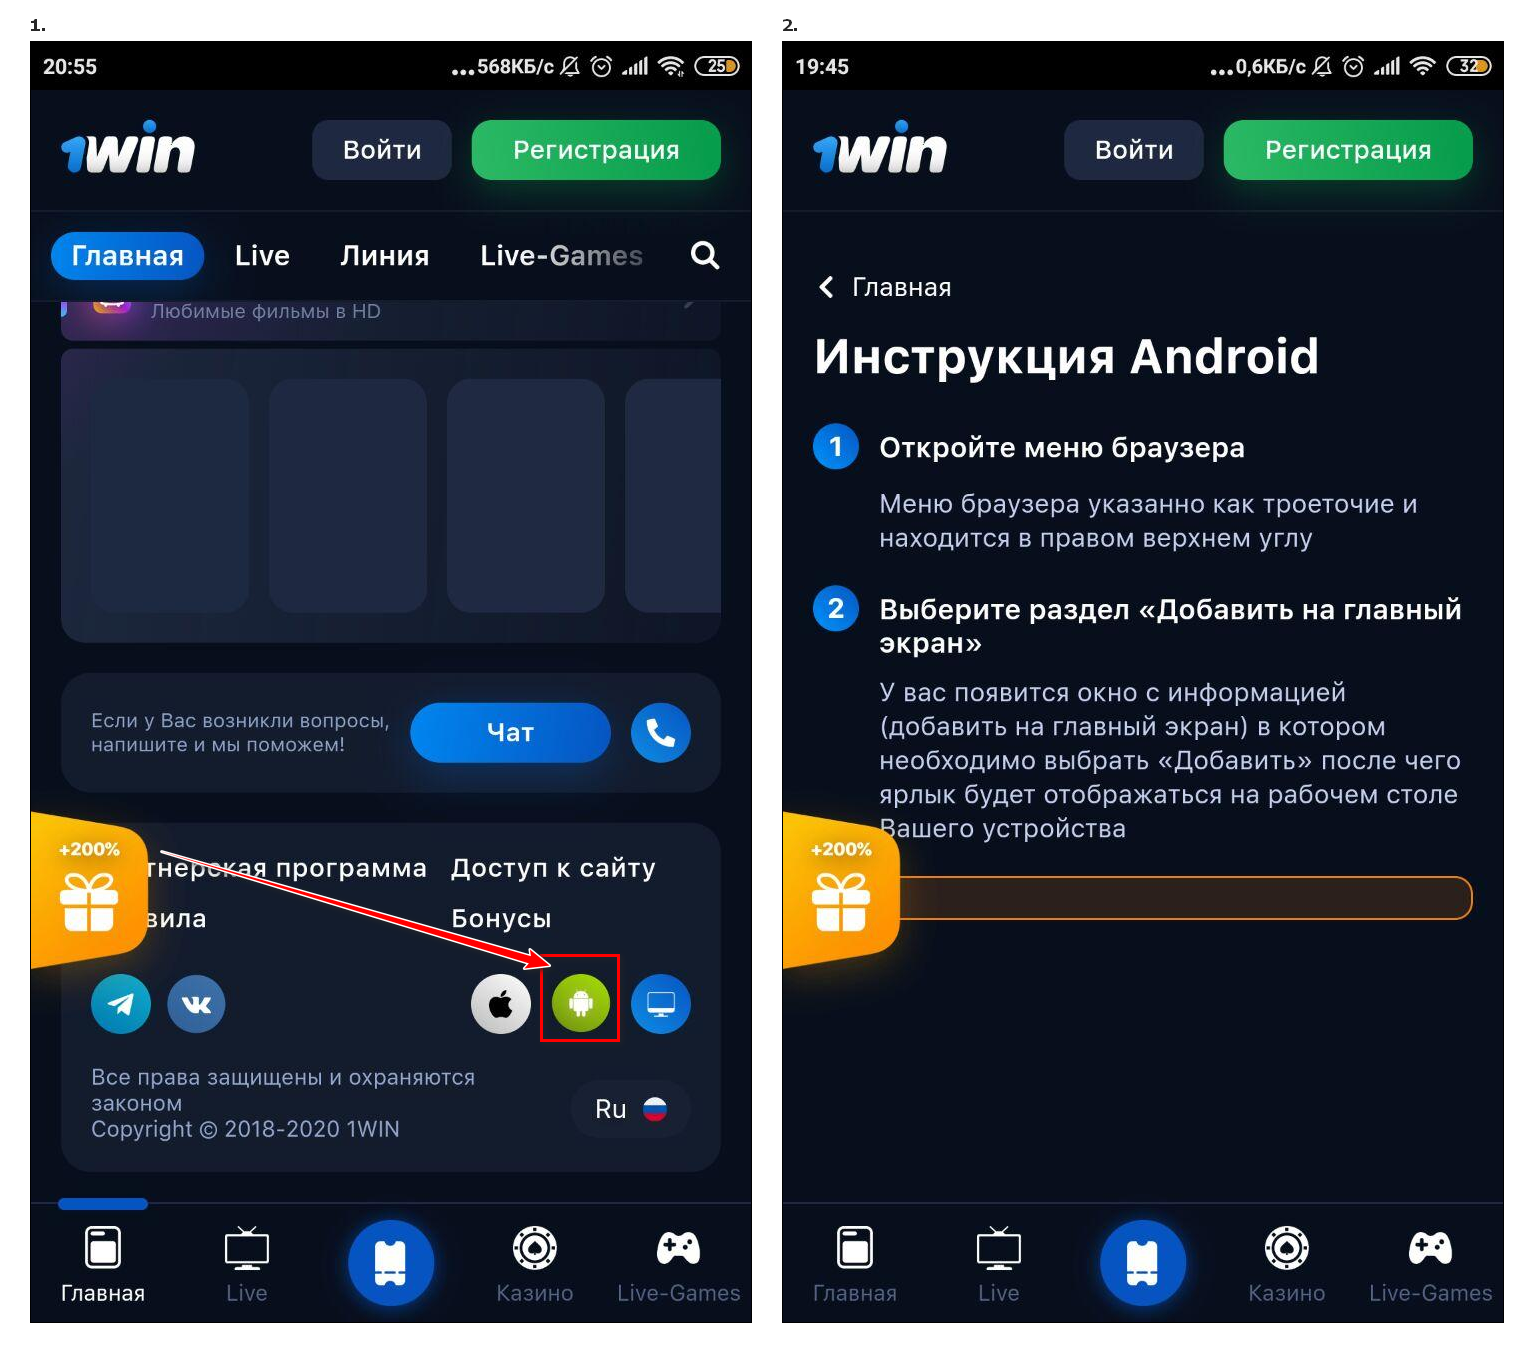 1вин андроид android 1 win net ru. 1вин приложение. Андроид 1.